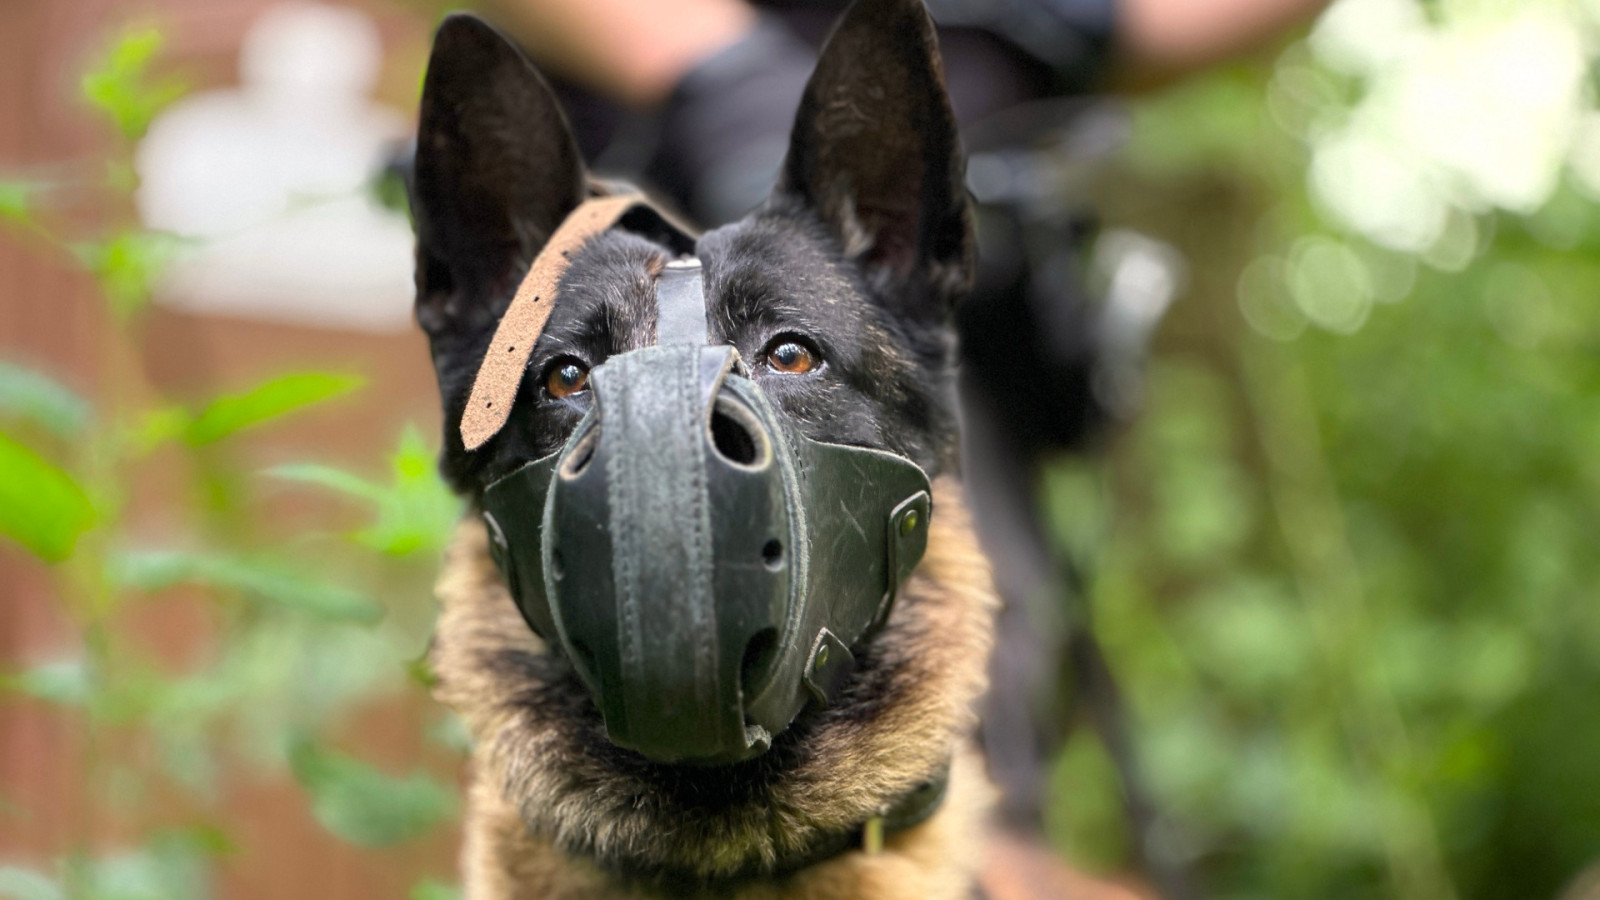 Een politiehond met muilkorf